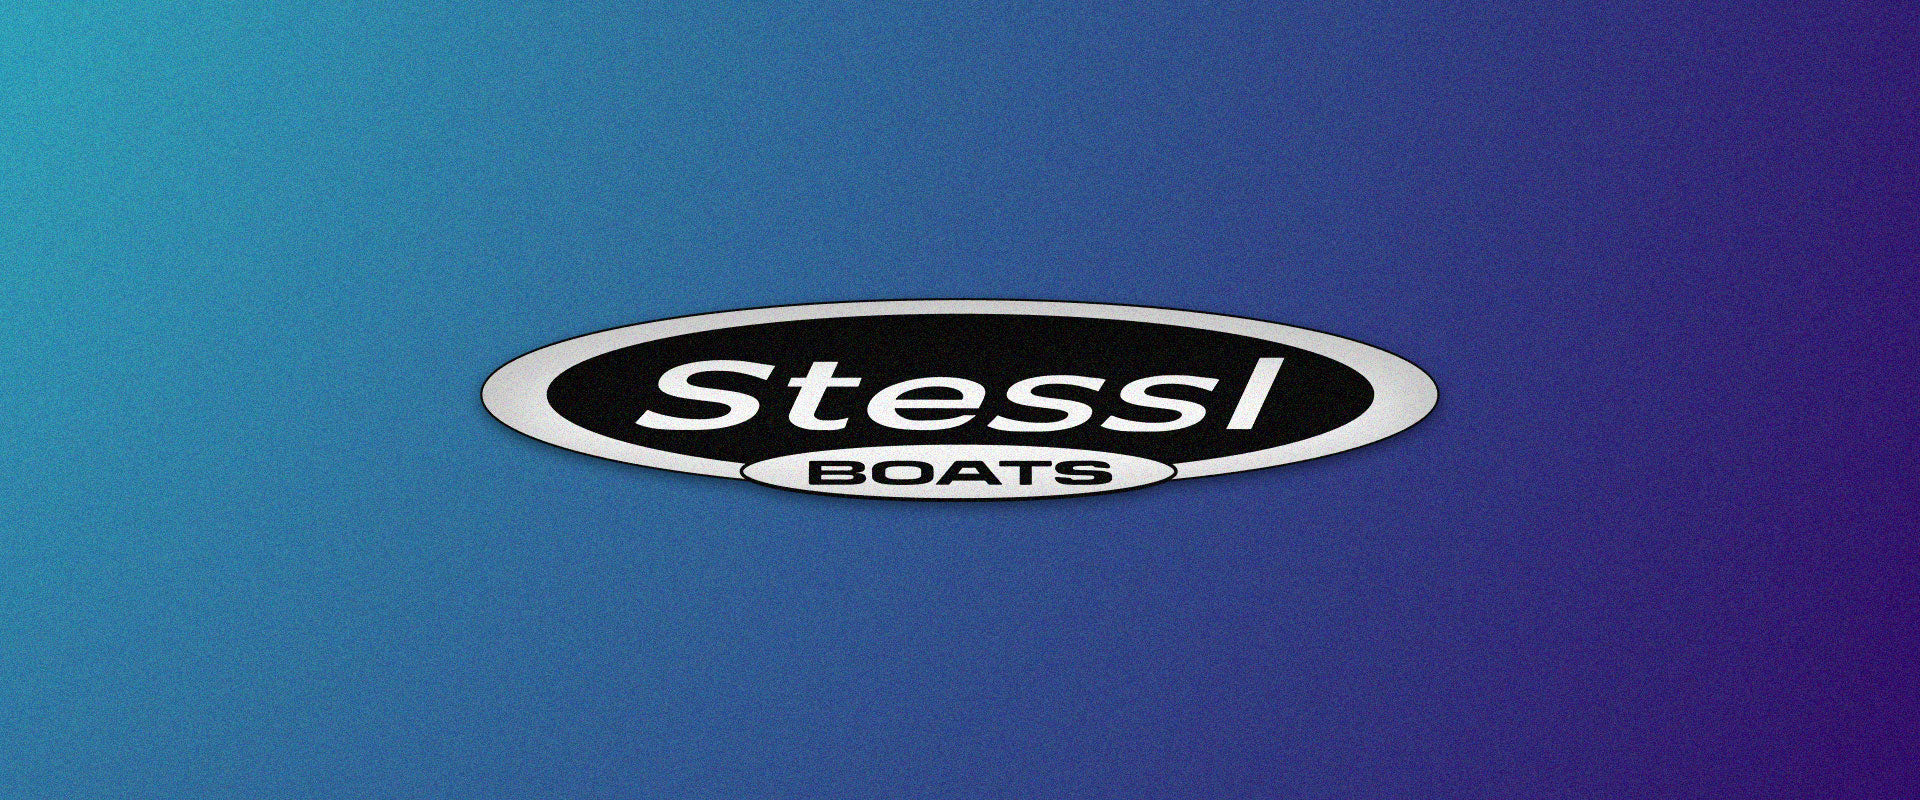 Stessl, boat, decal